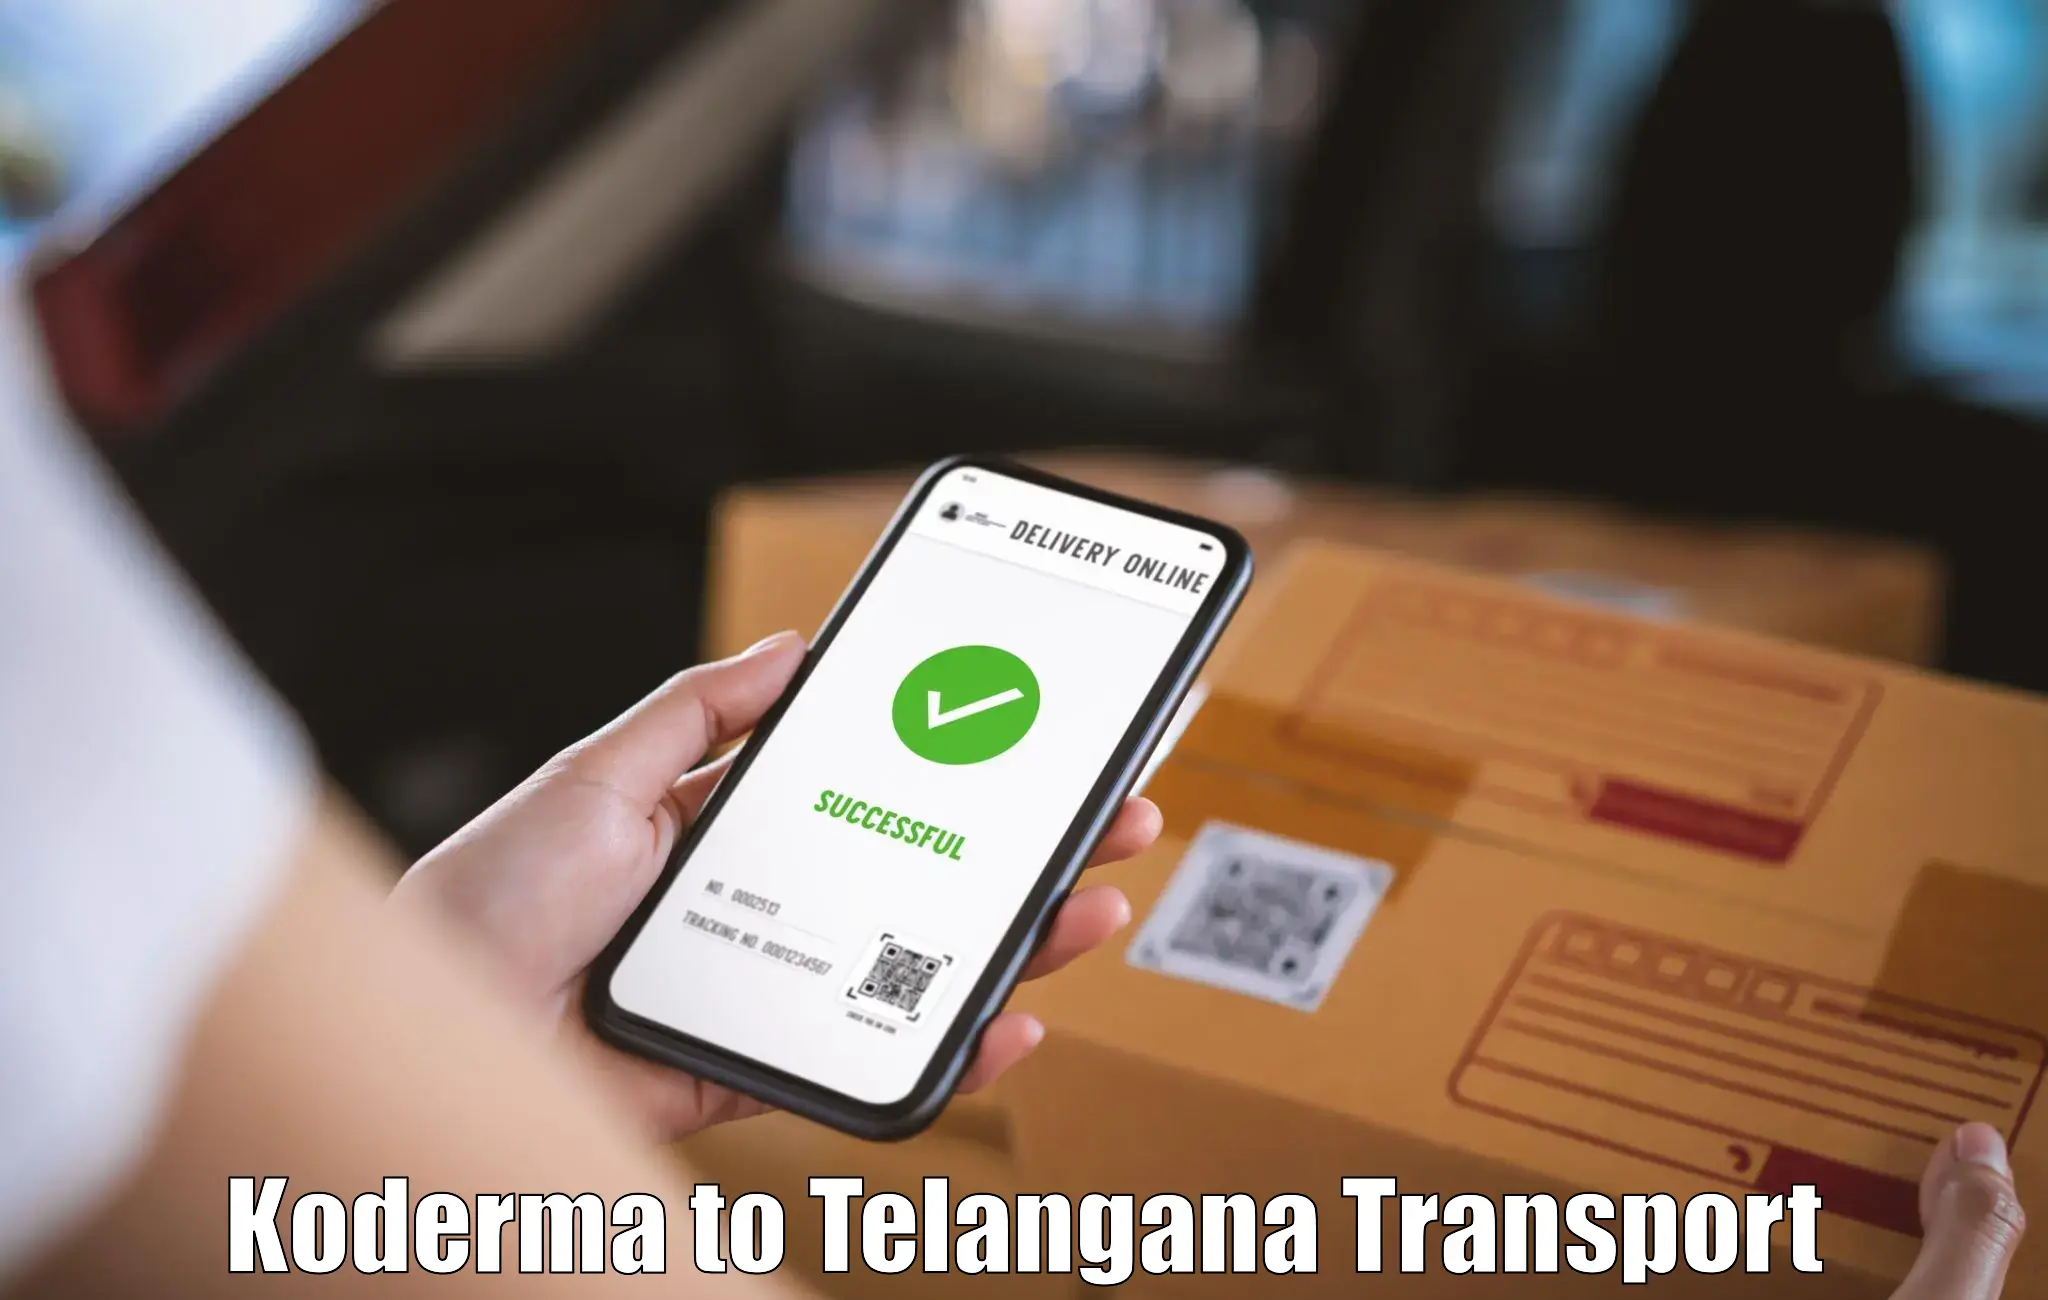 Online transport booking Koderma to IIT Hyderabad